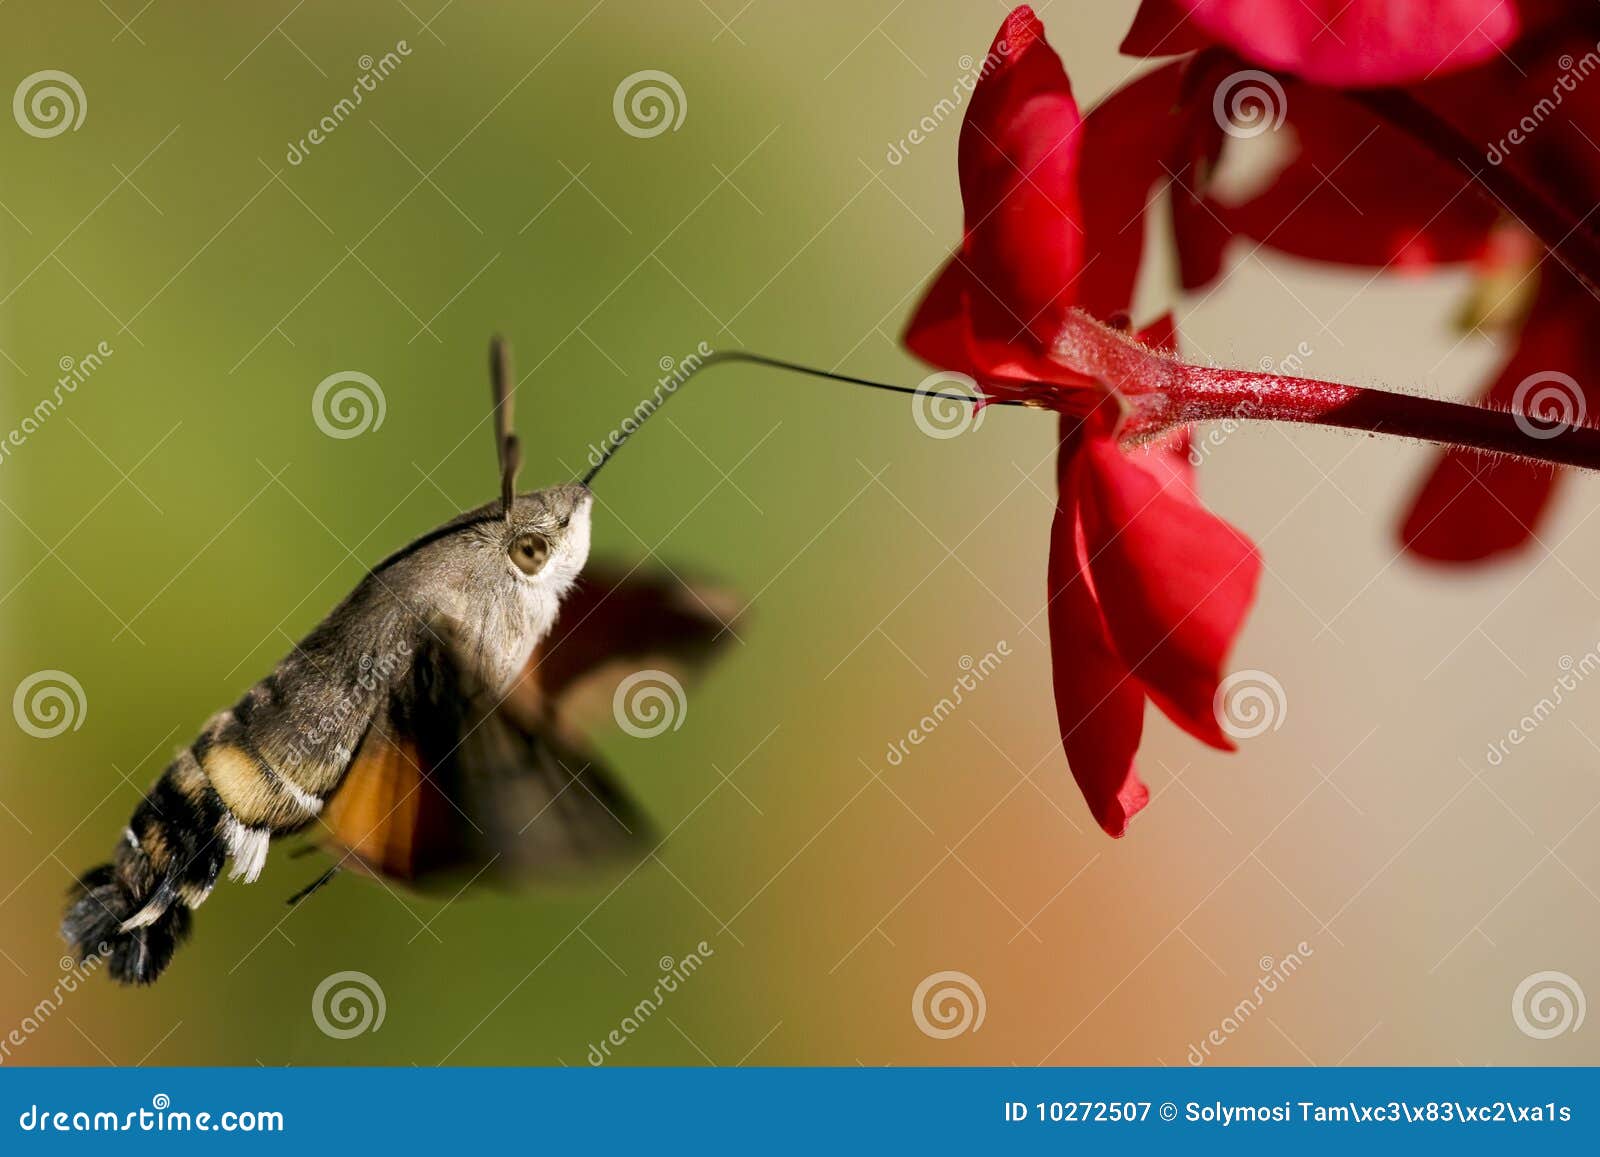 hummingbird hawk-moth geranium nectar